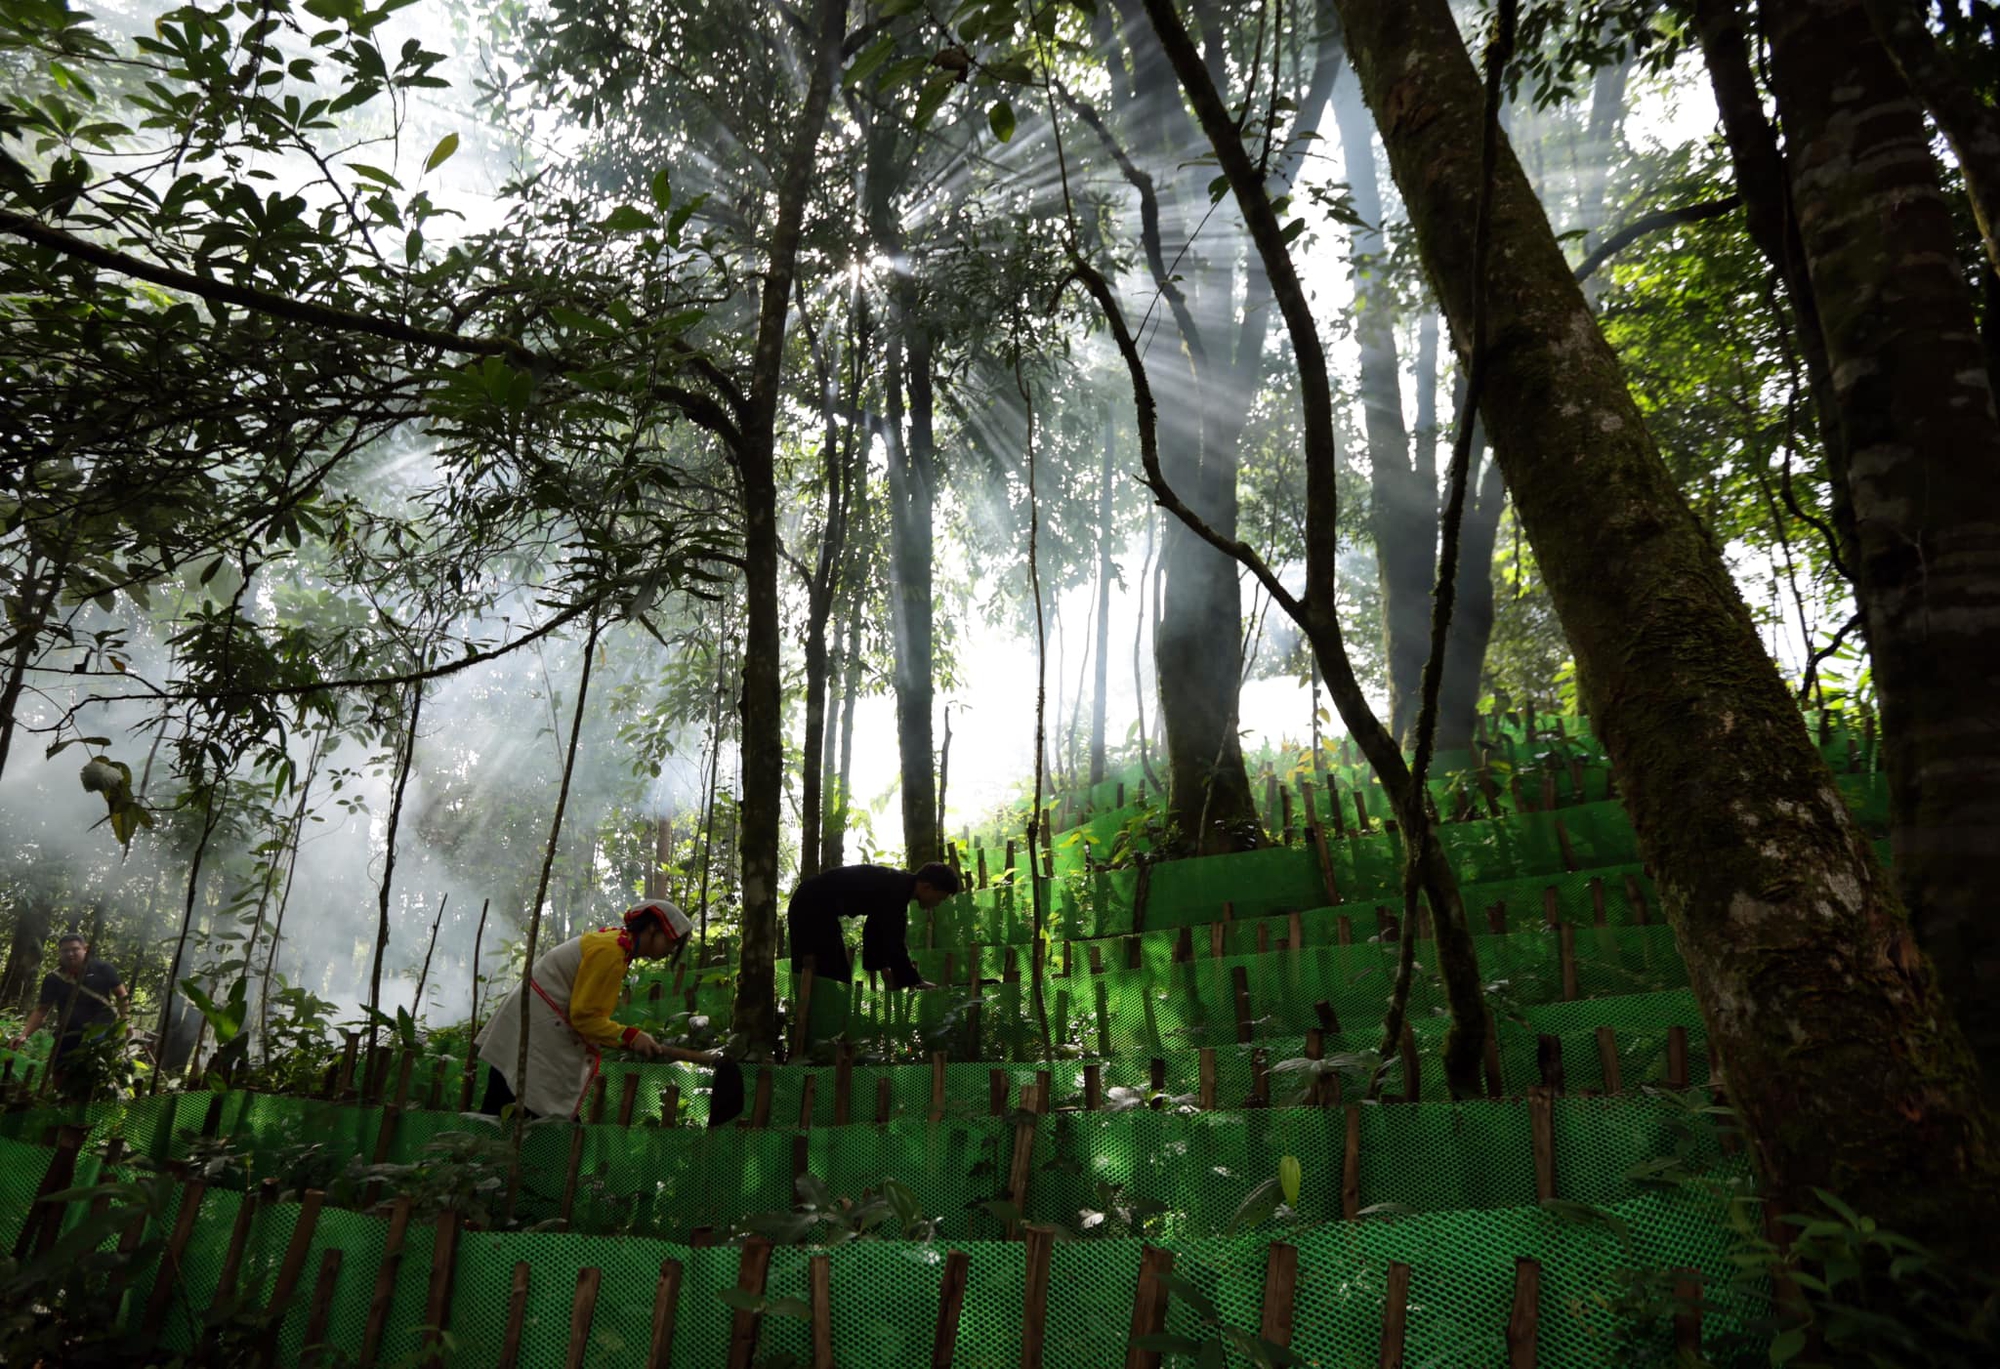 Lên huyện ngã ba biên giới Mường Nhé, nghe chuyện giữ rừng và hưởng lợi từ rừng - Ảnh 1.